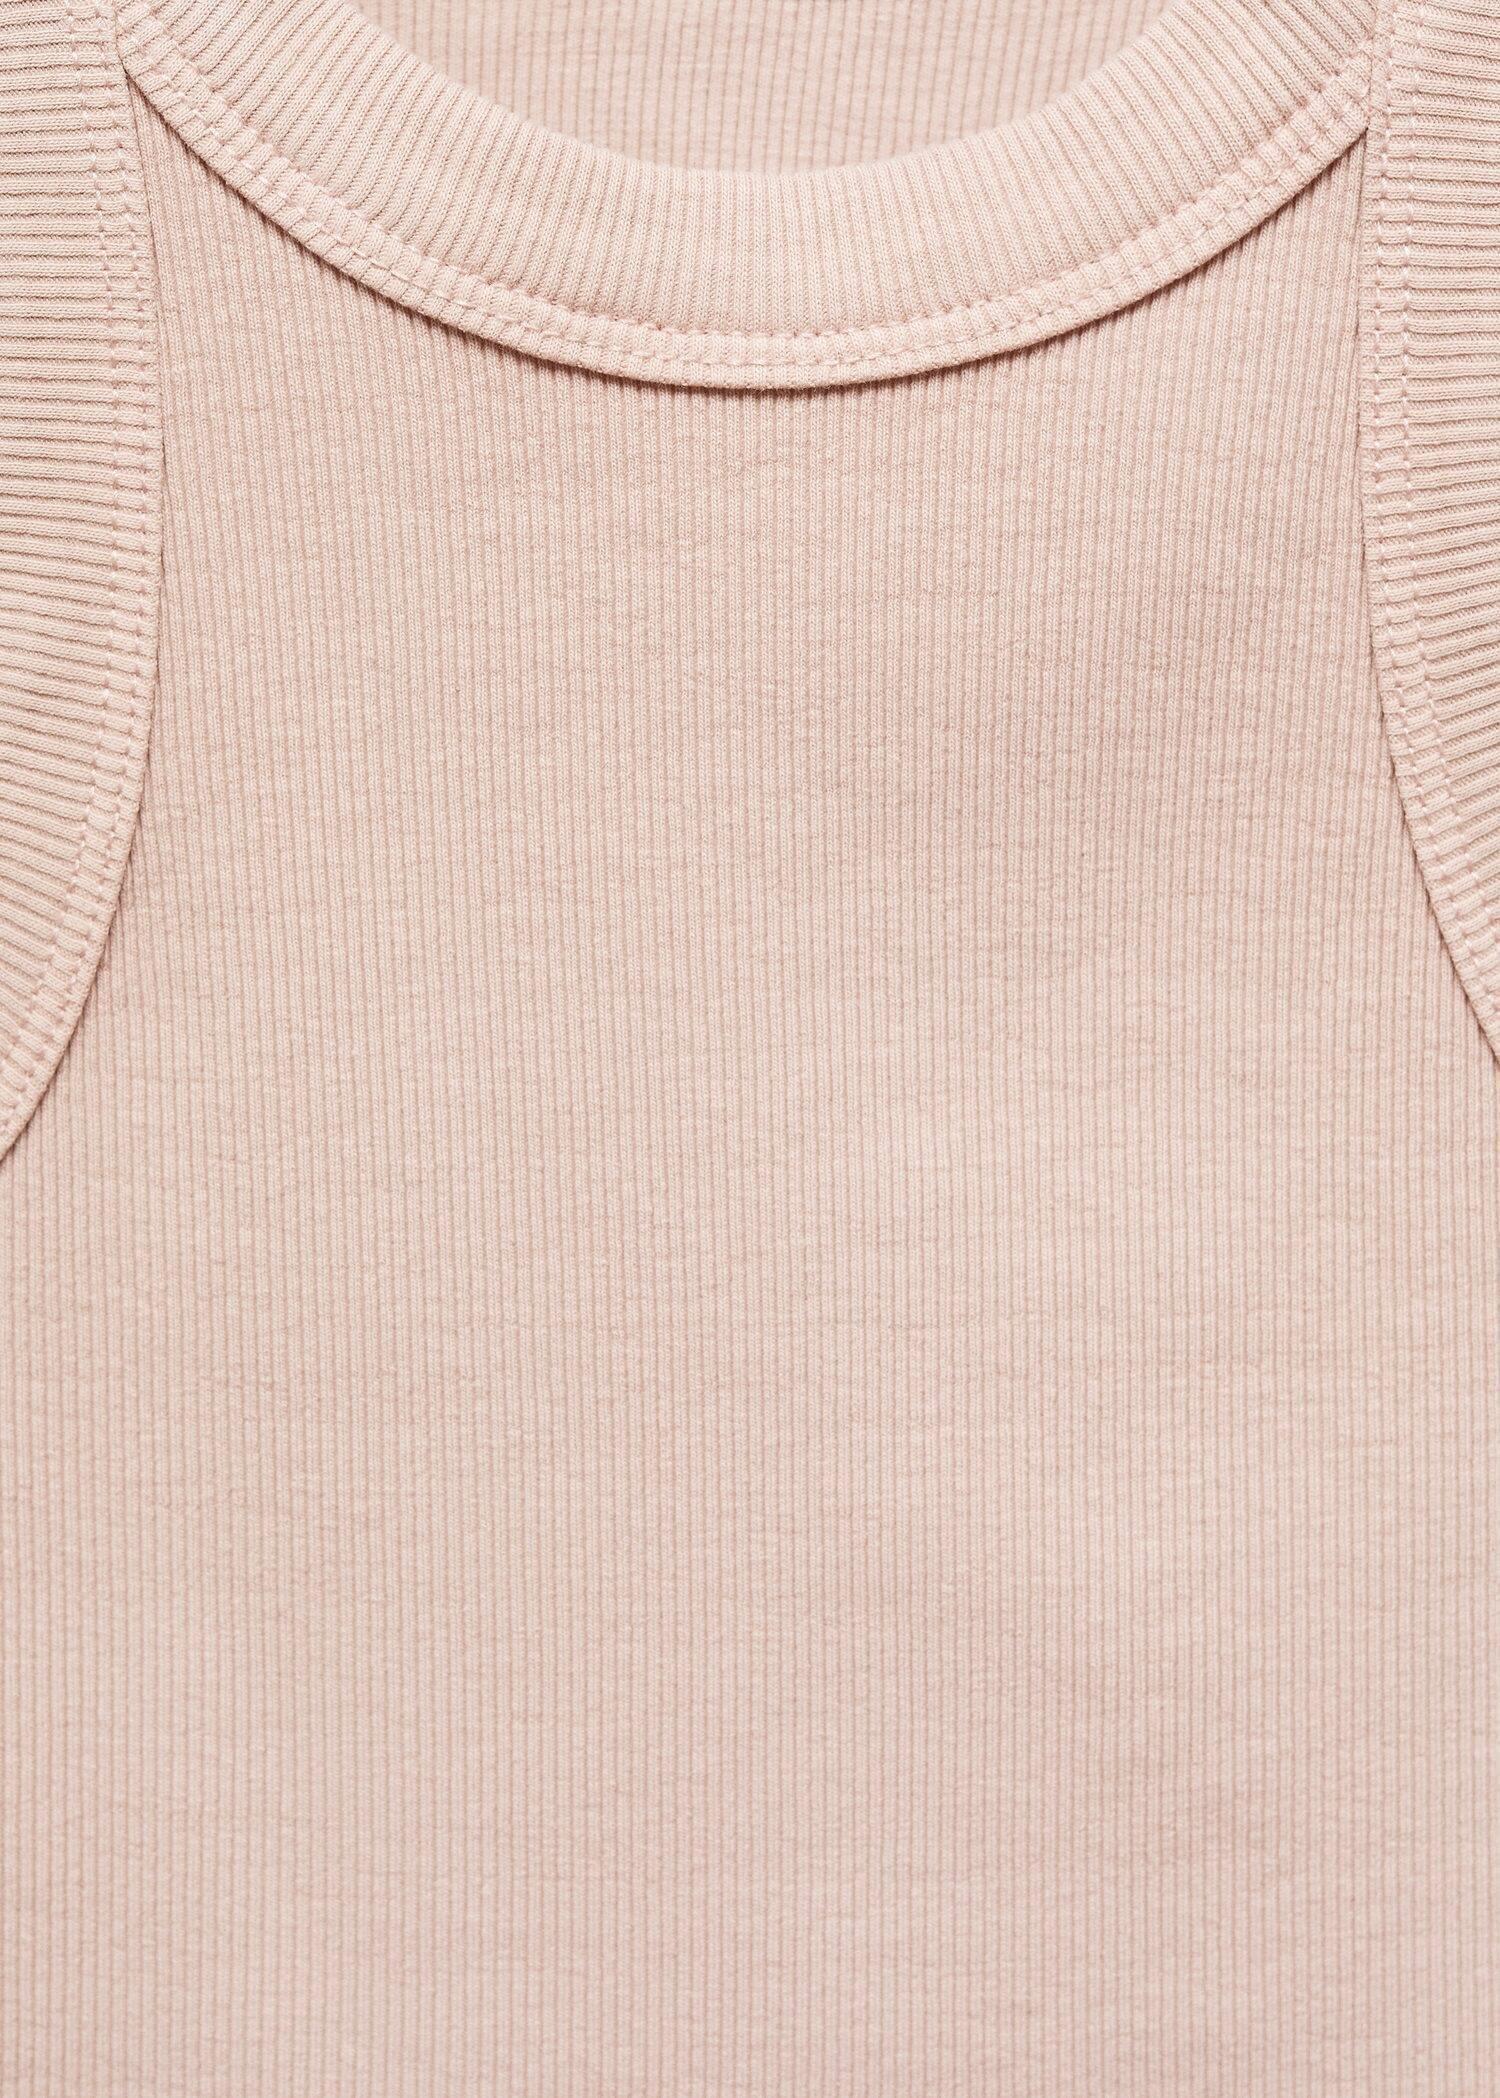 Mango - Pink Ribbed Strap T-Shirt, Kids Girls